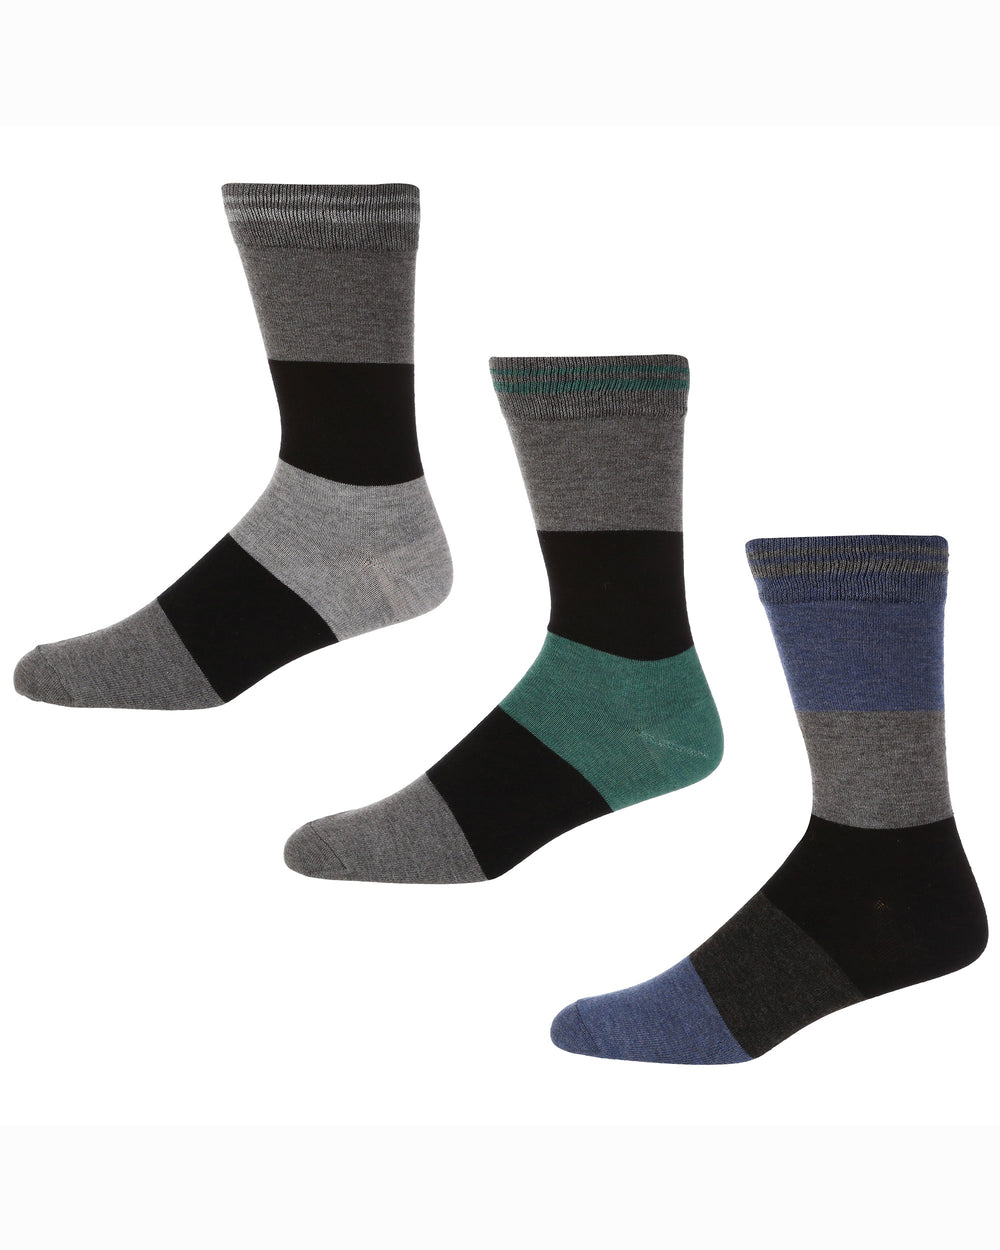 Blakeney Men's 3-Pack Socks - Grey/Blue/Green Stripe